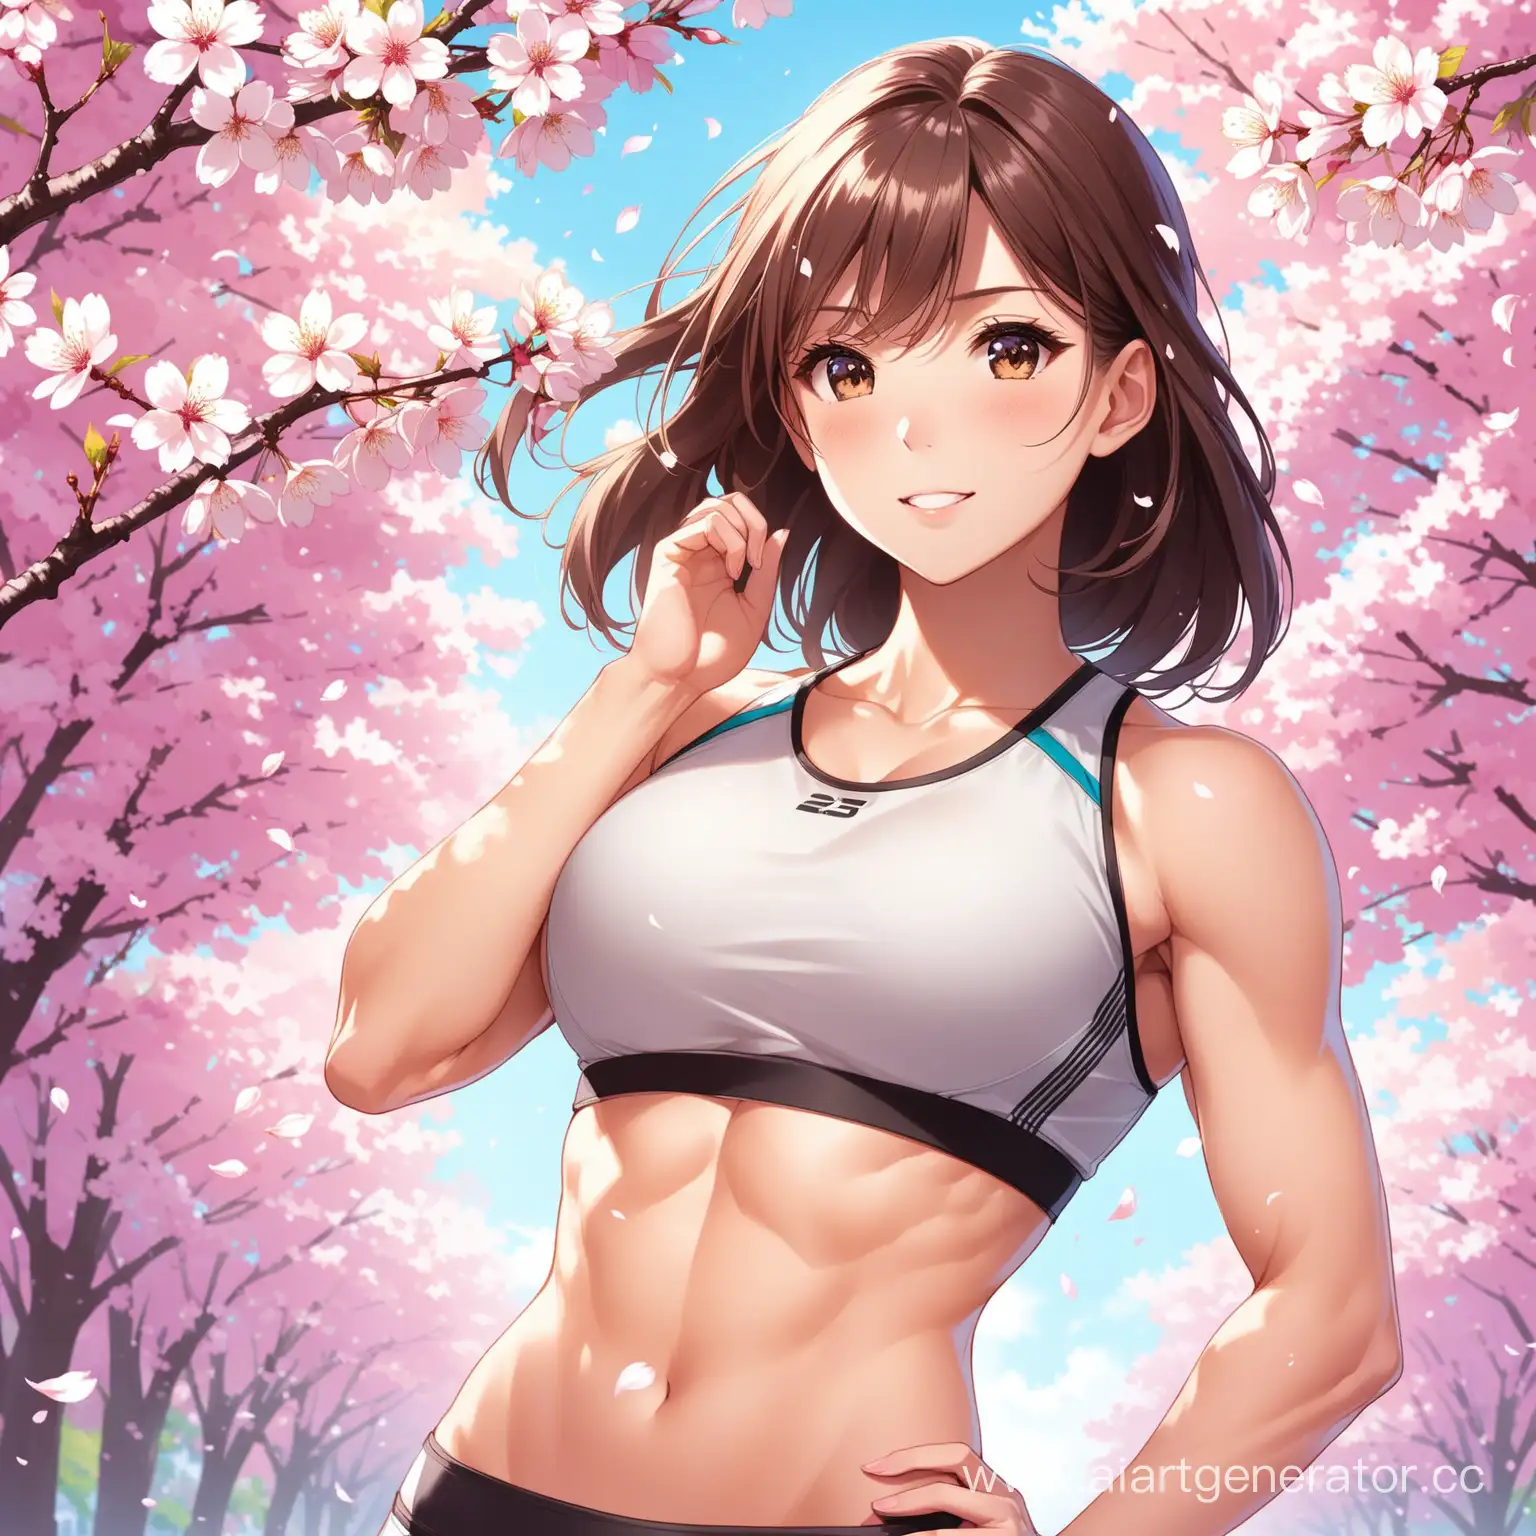 девушка спортивного телосложения на фоне сакуры